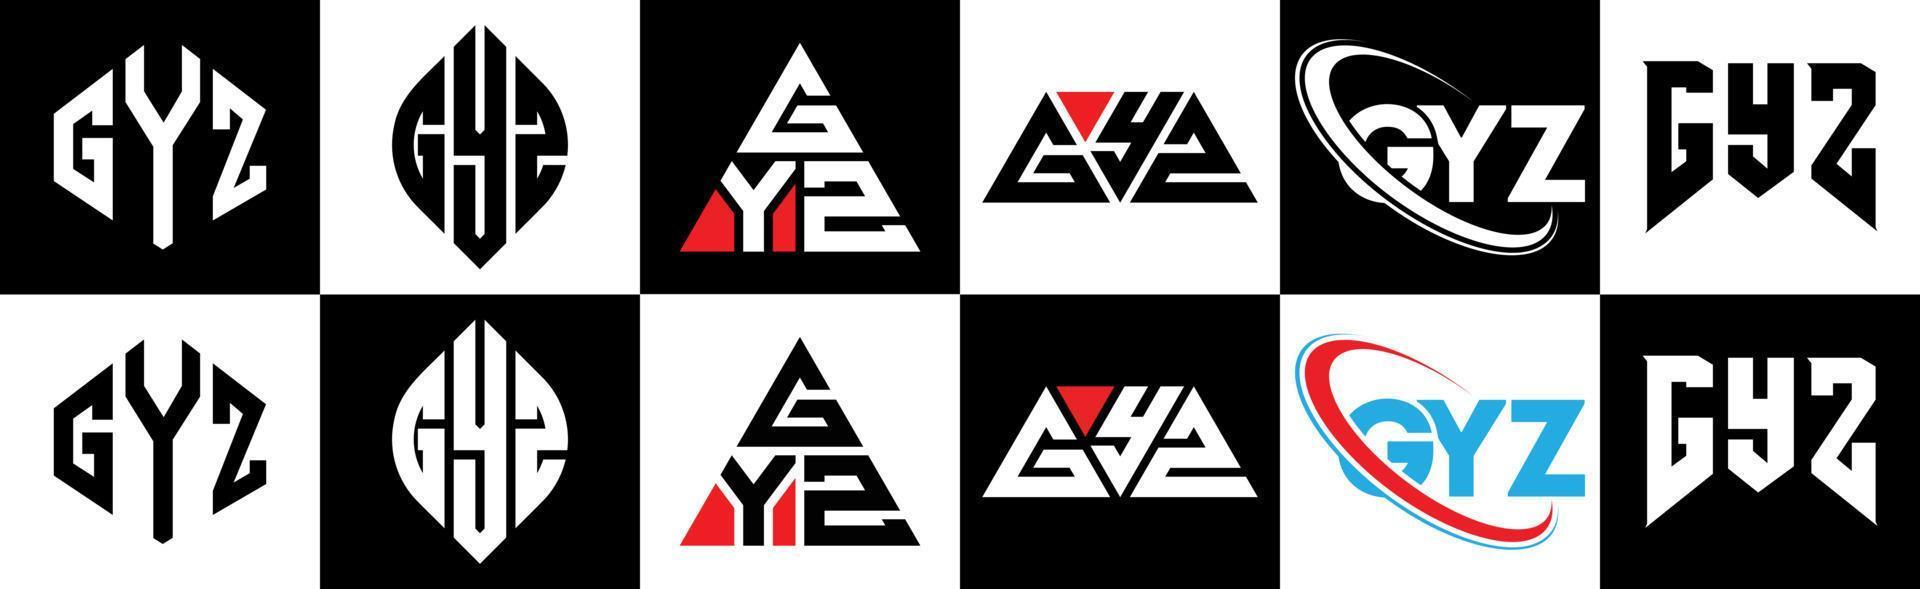 gyz-Buchstaben-Logo-Design in sechs Stilen. gyz polygon, kreis, dreieck, sechseck, flacher und einfacher stil mit schwarz-weißem buchstabenlogo in einer zeichenfläche. gyz minimalistisches und klassisches logo vektor